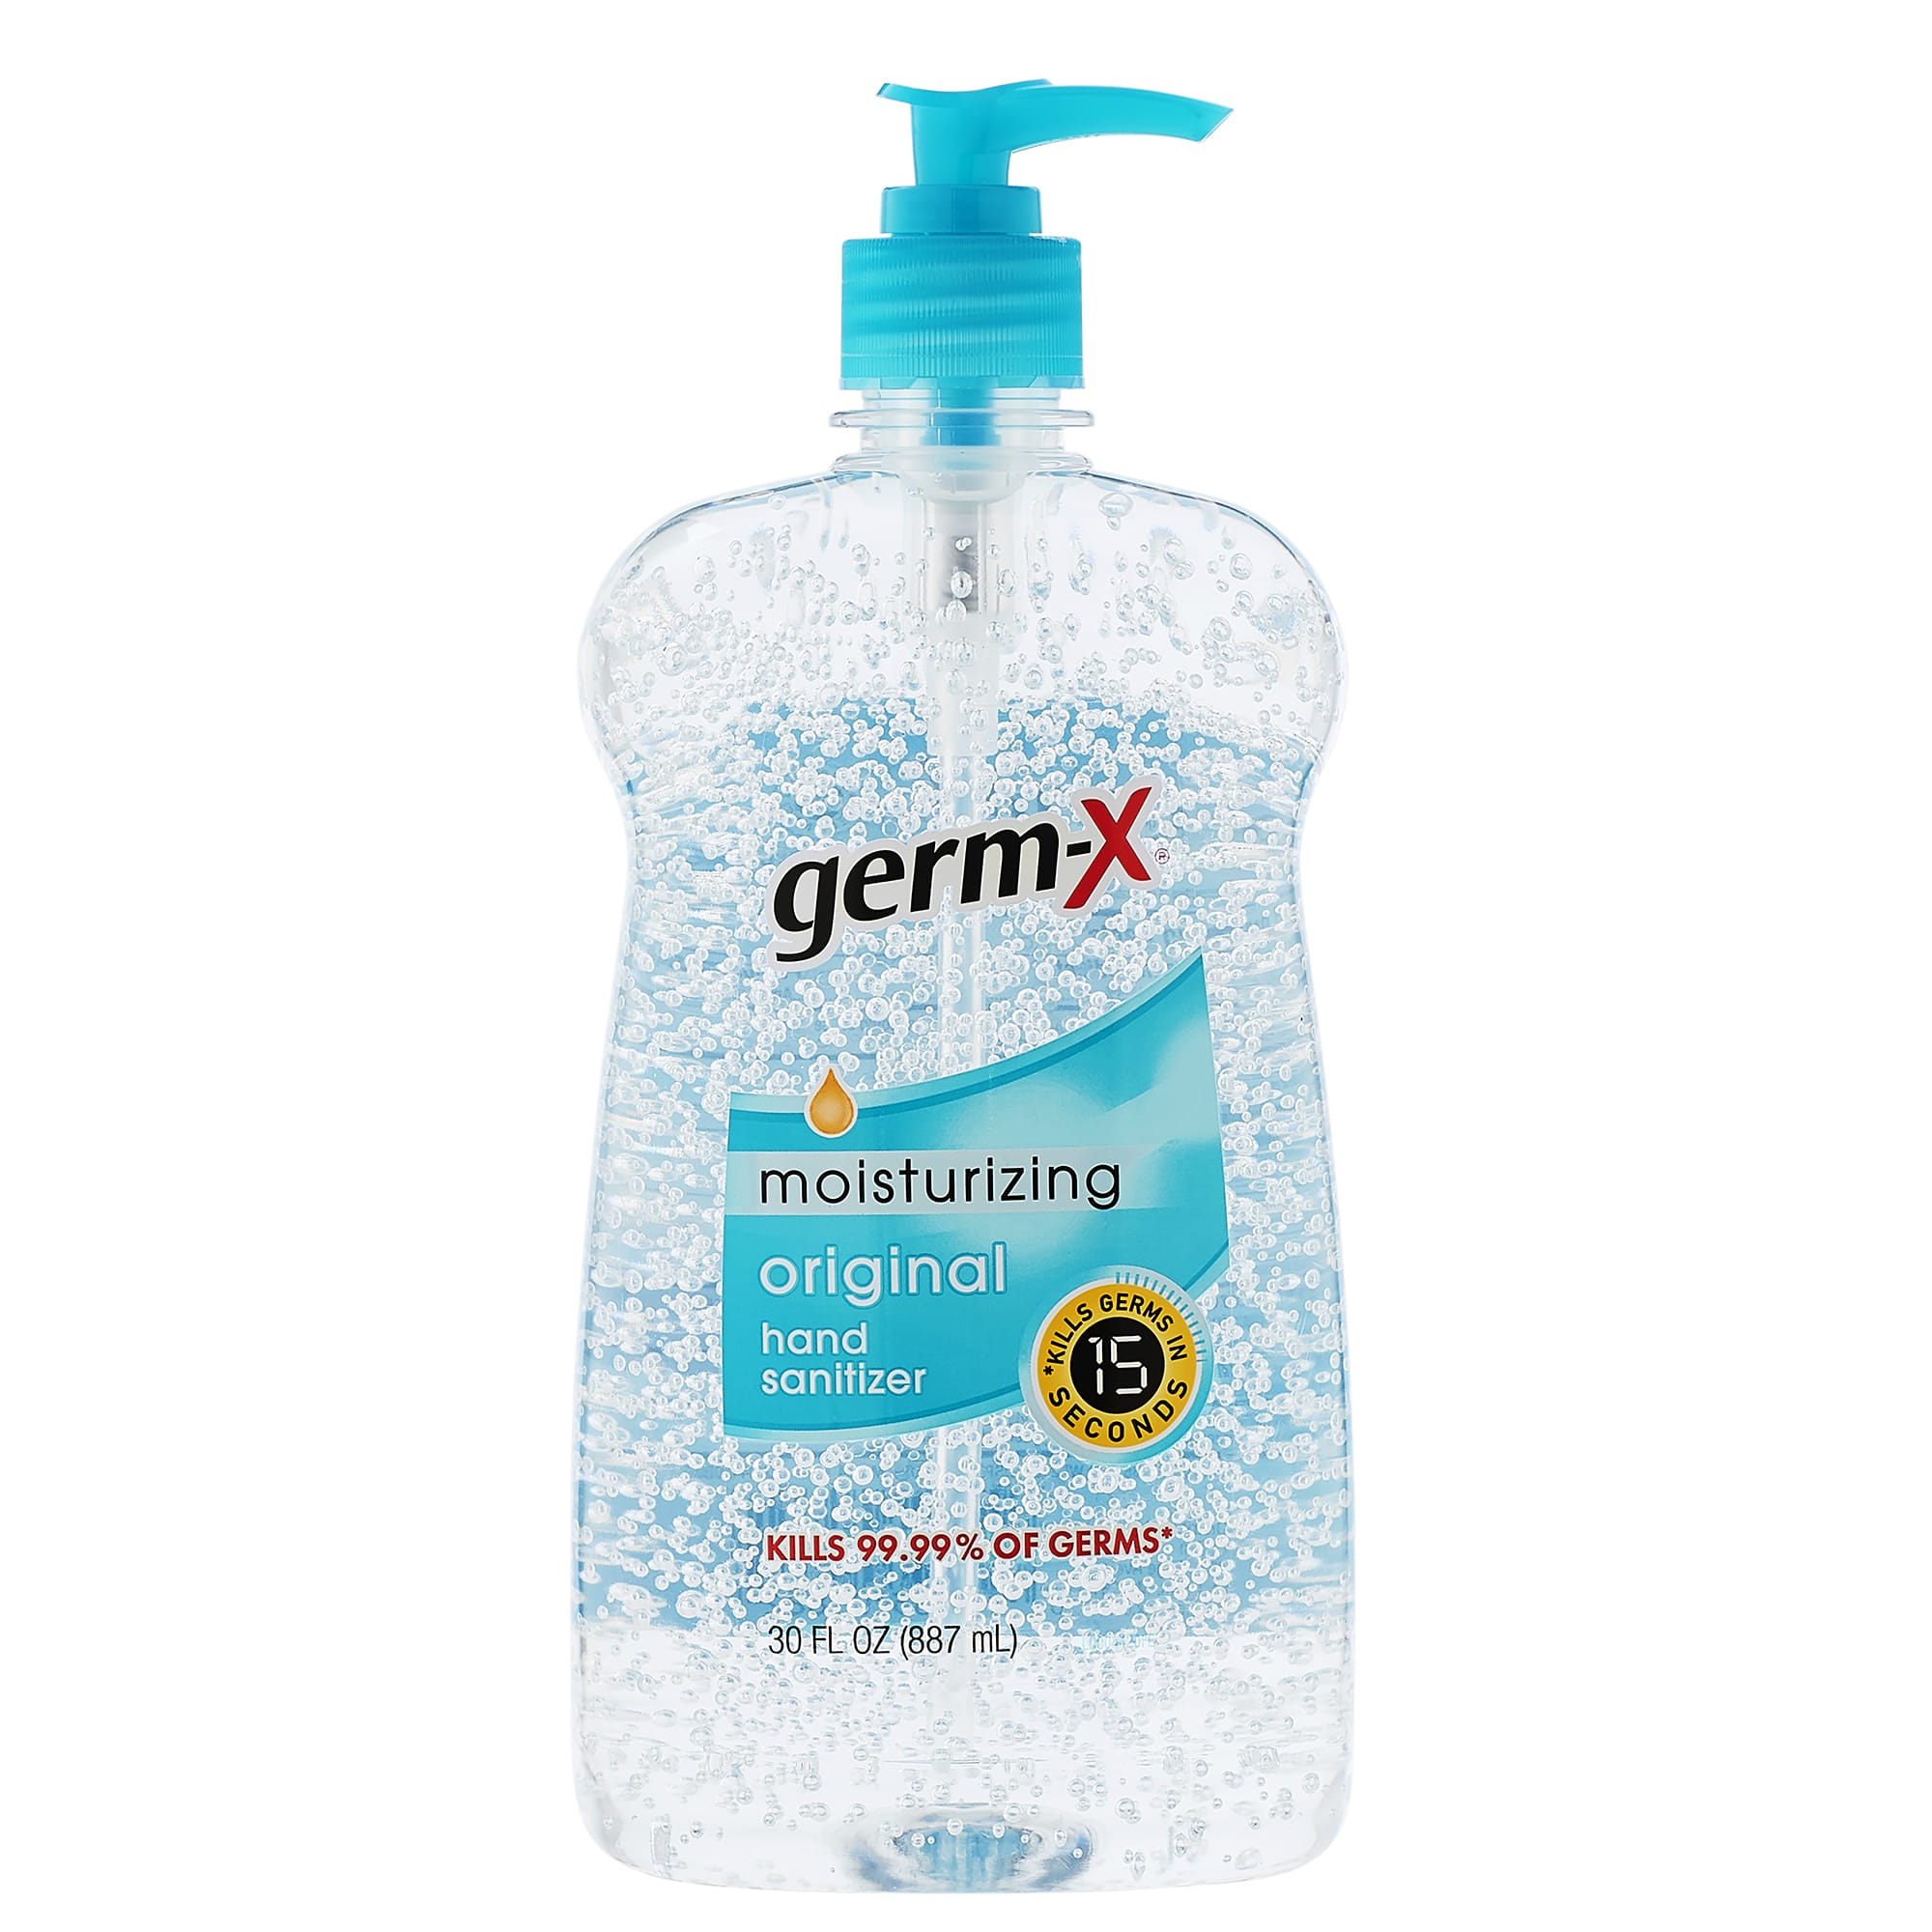 Germ x